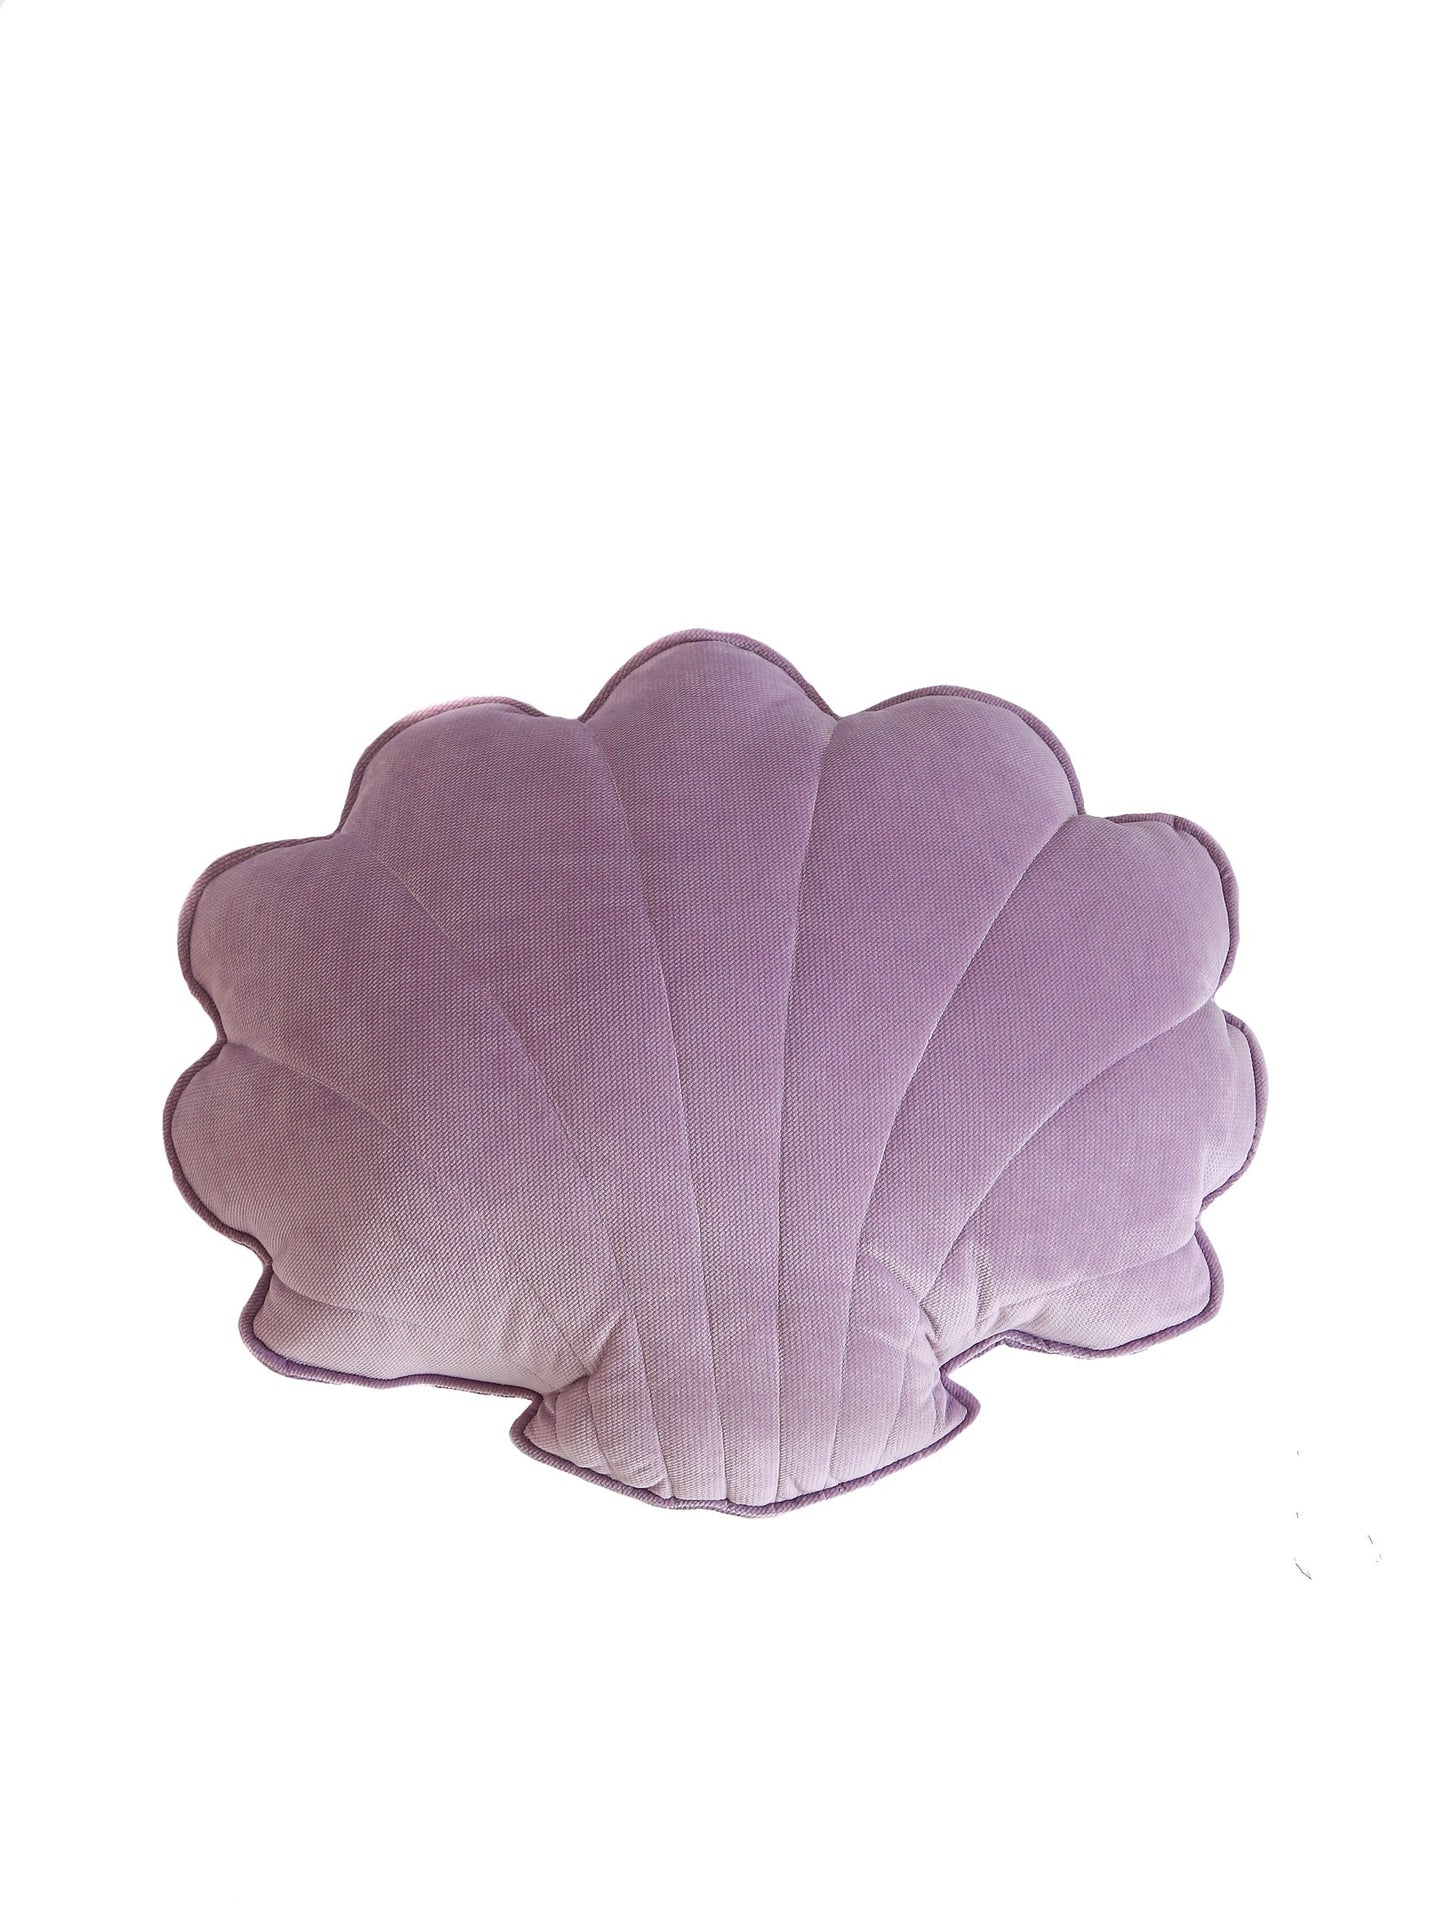 Large Velvet “Purple" Shell Pillow